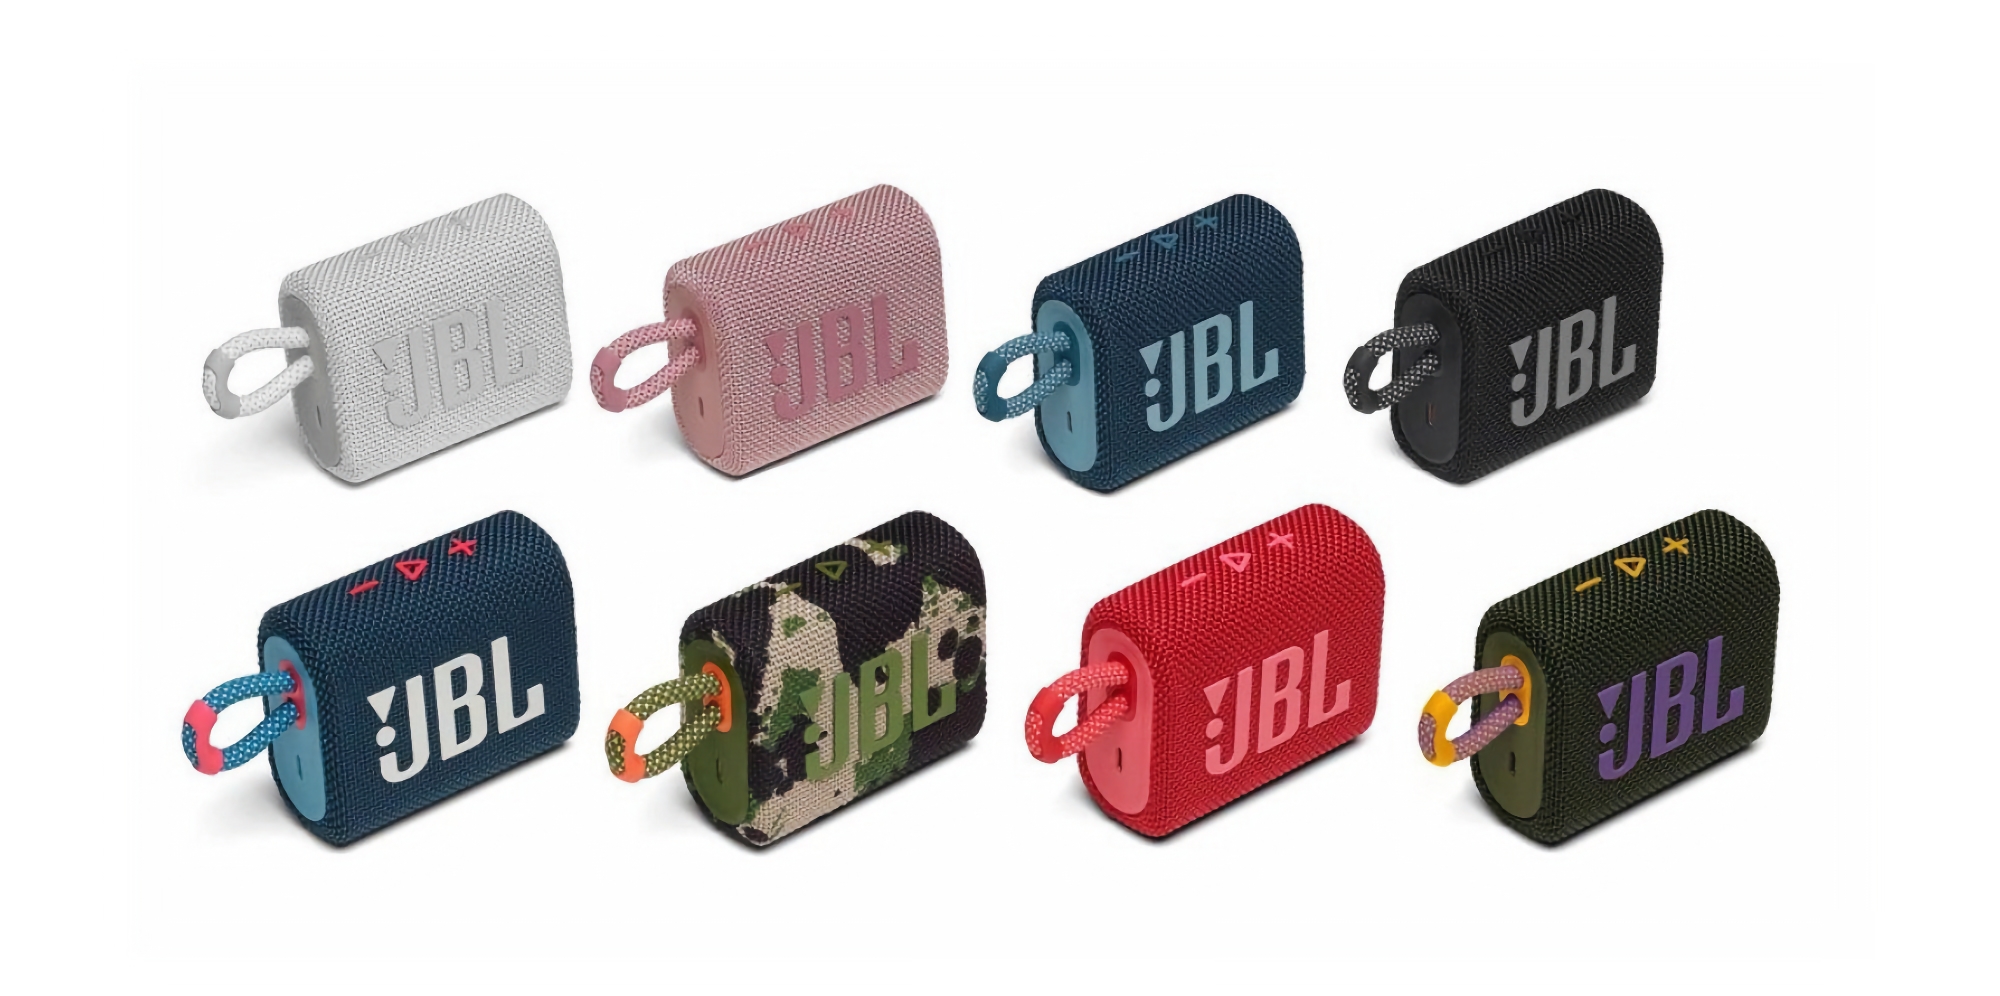 Il diffusore wireless compatto JBL Go 3 con protezione IP67 è in vendita su Amazon a 39,95 dollari (10 dollari di sconto)